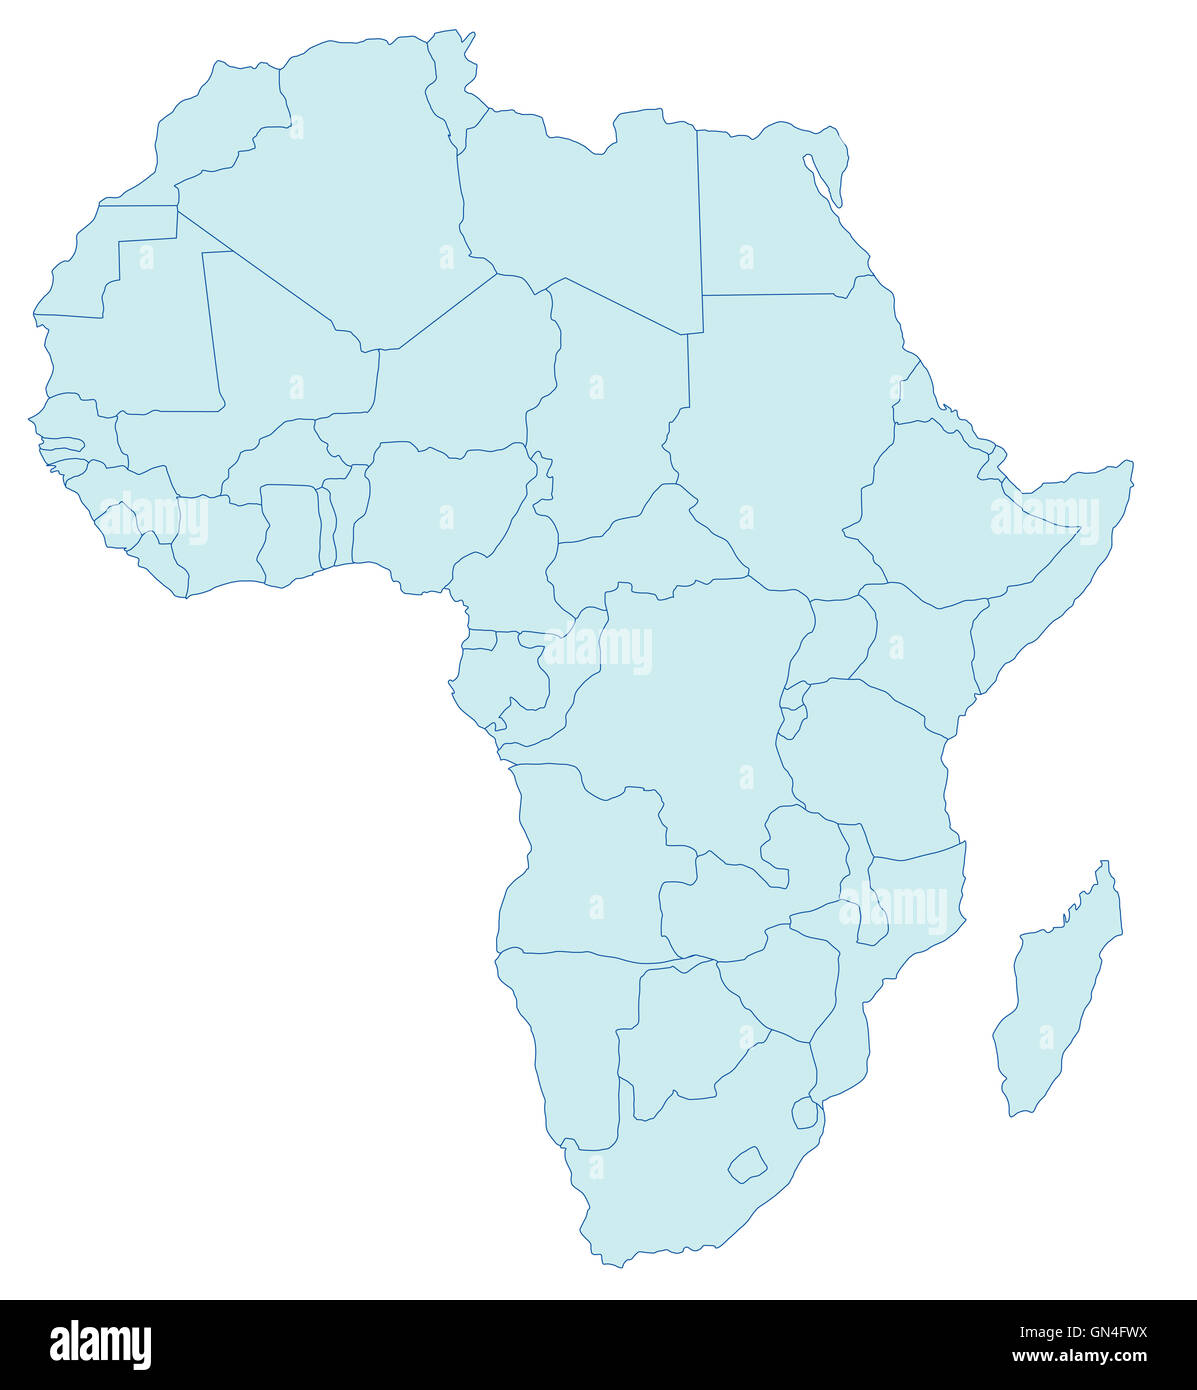 Cartina muta dell'africa immagini e fotografie stock ad alta risoluzione -  Alamy